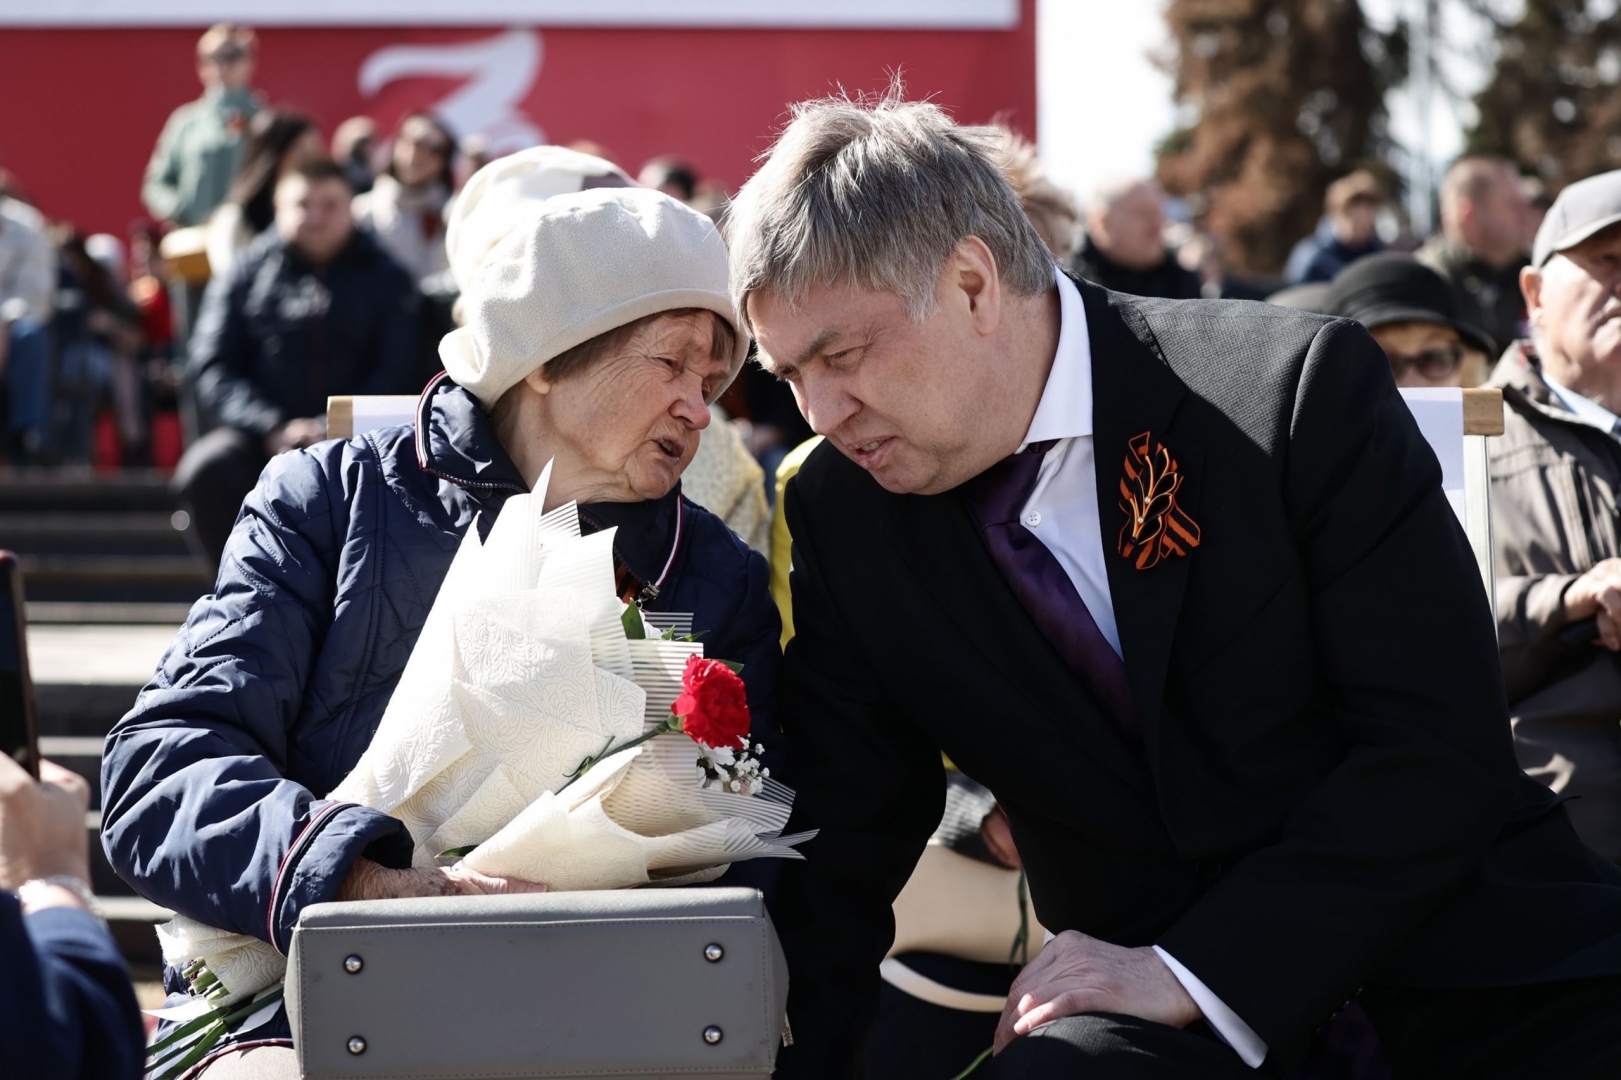 «Гордость и боль»: Губернатор Русских во время парада пообщался с узницей фашистского концлагеря